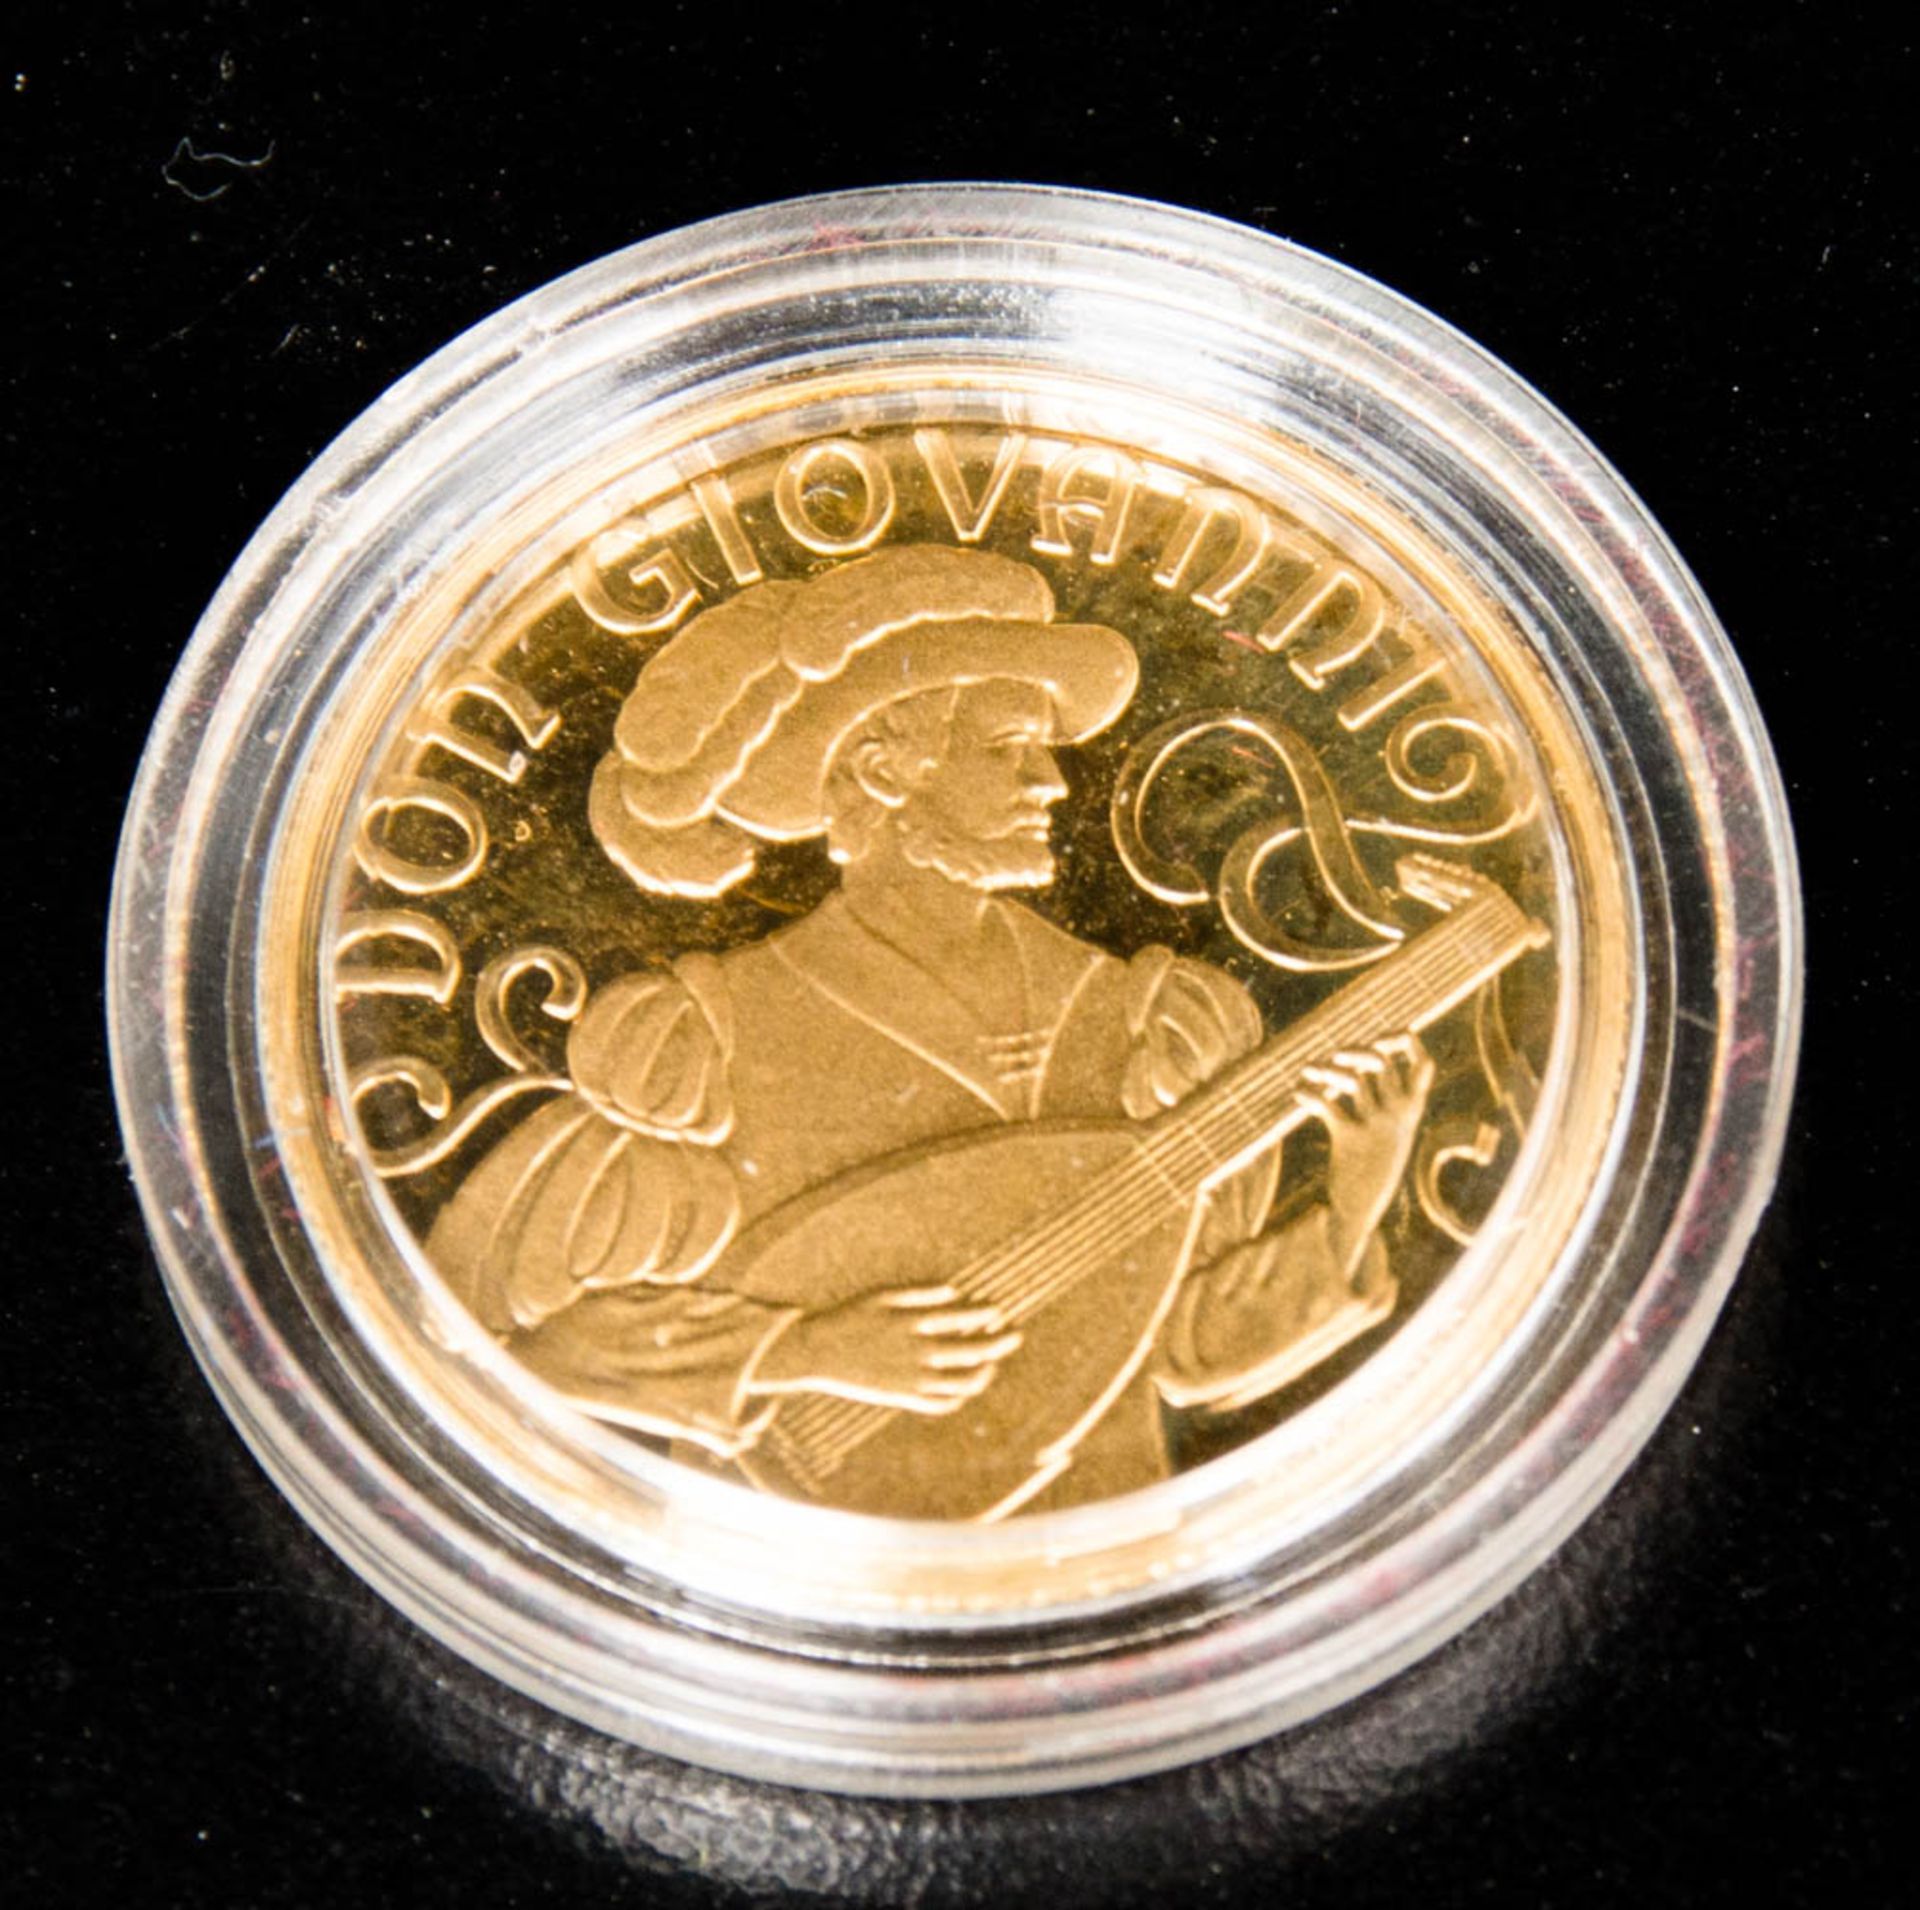 Mozart Gedenkmünze, 500 Schilling, Gold.986er Feingold.8 g. 22 mm Durchmesser.In Schatulle mit